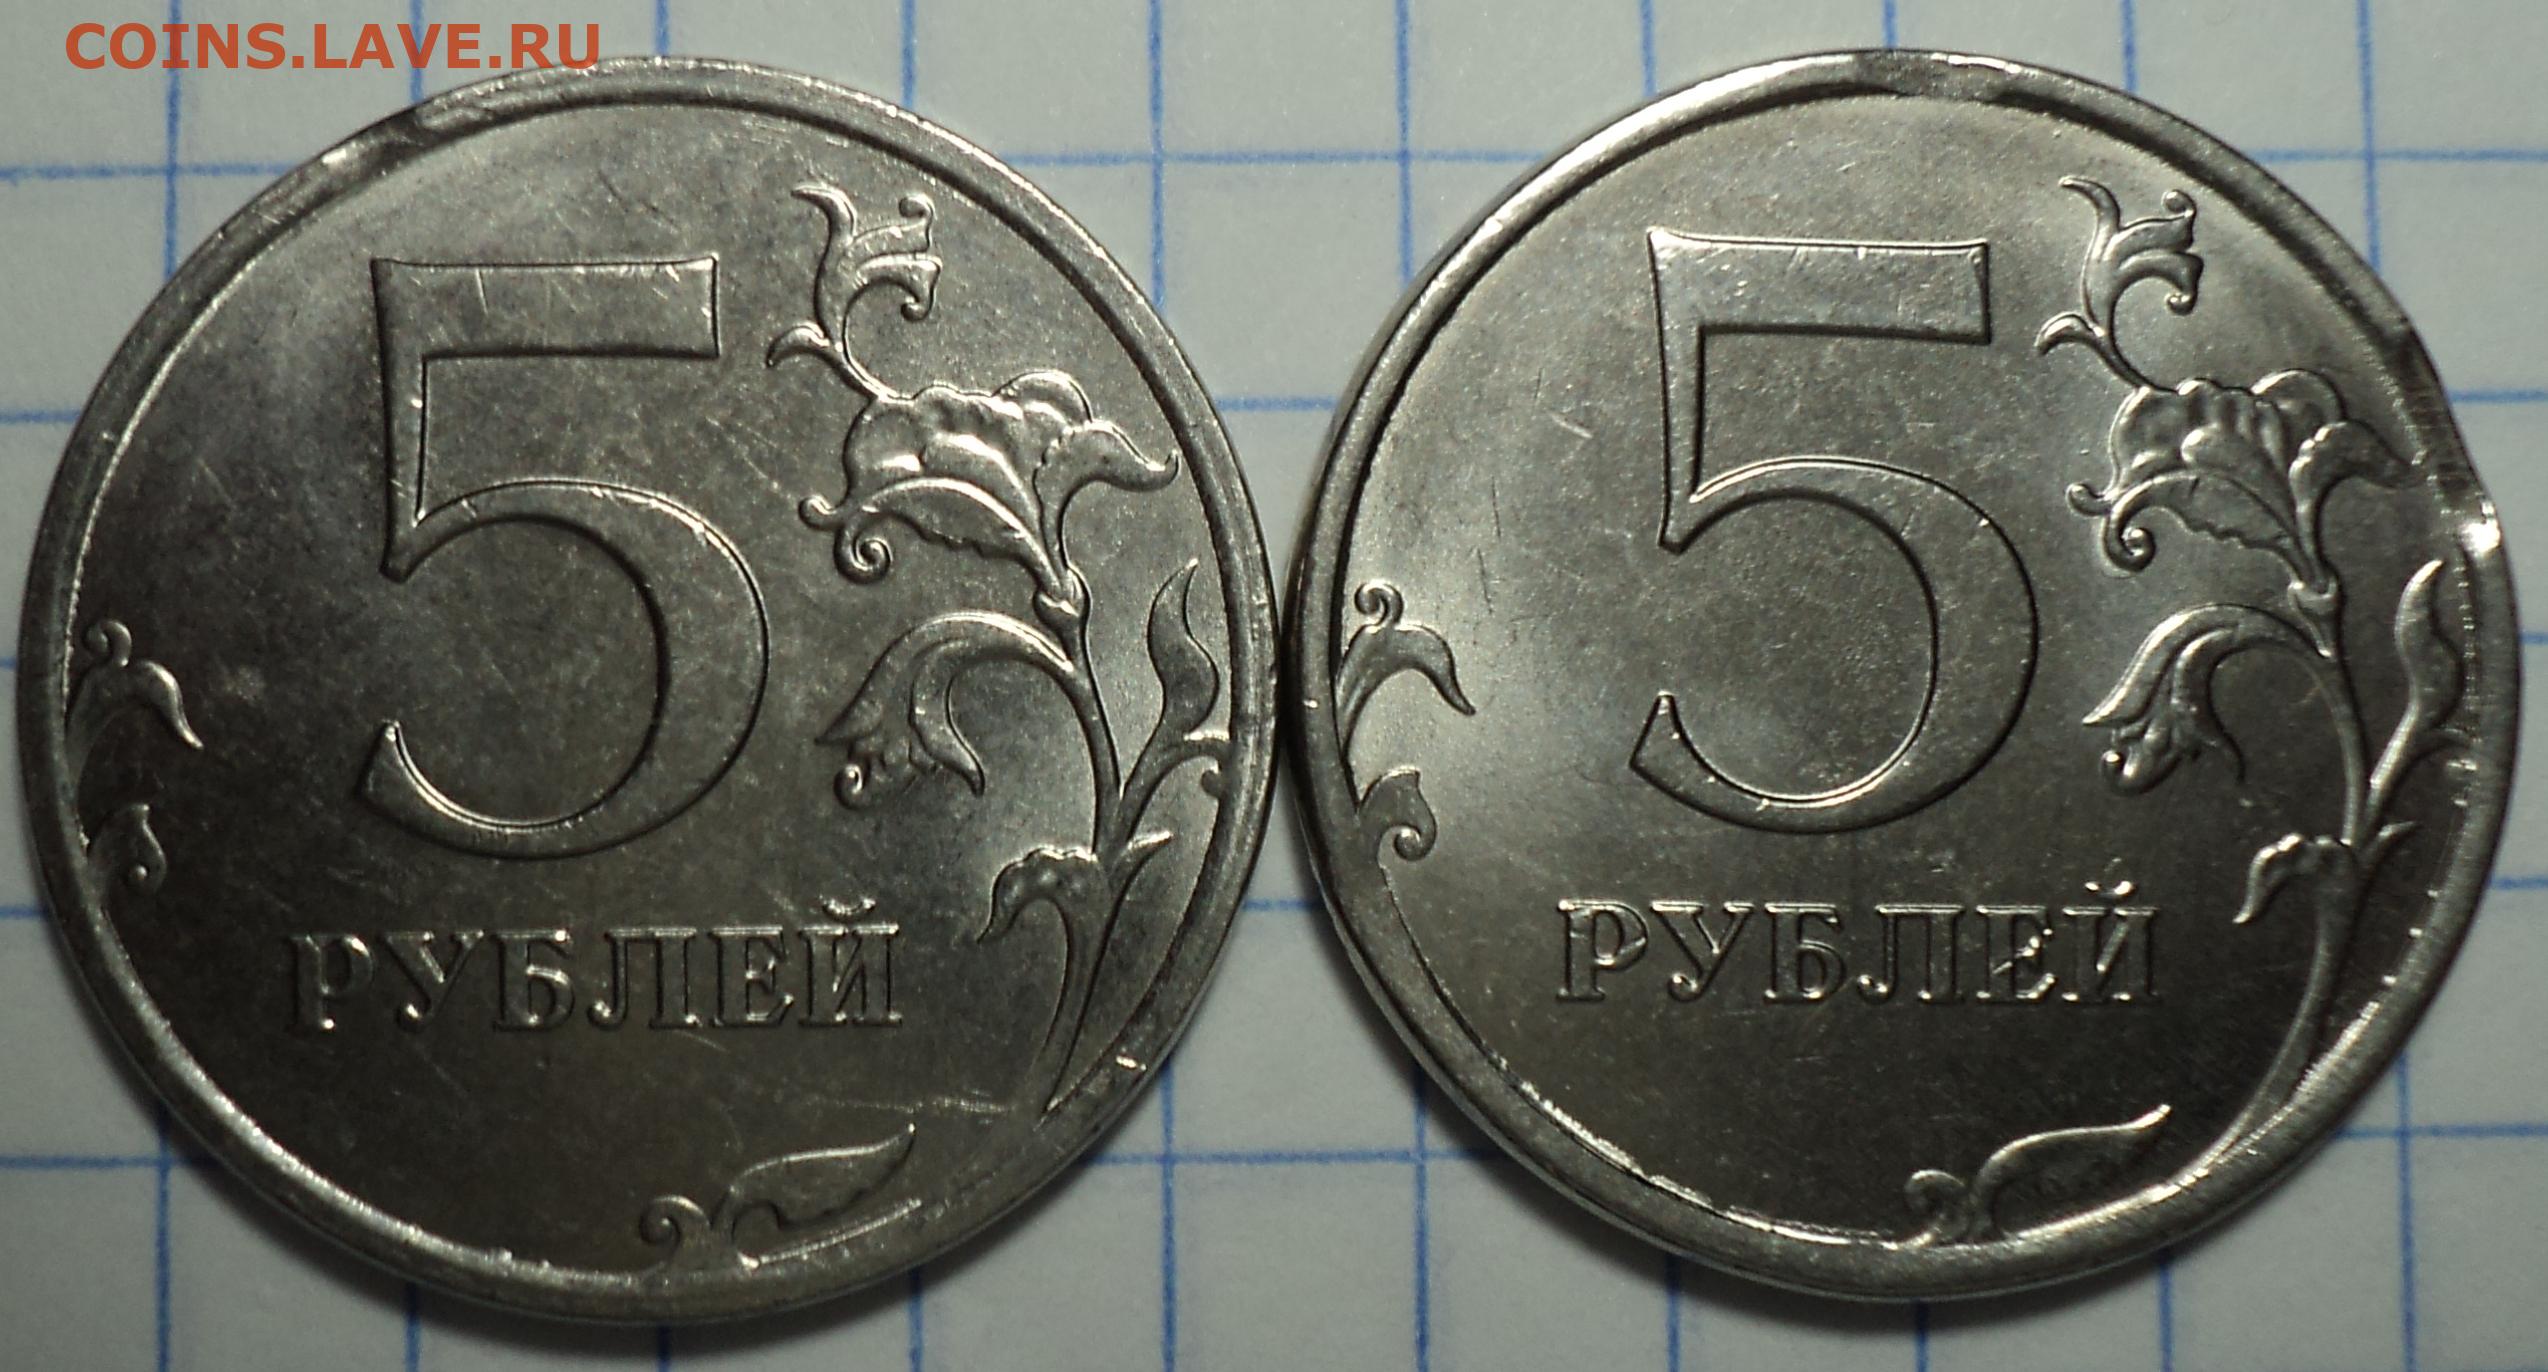 6 80 в рублях. Выкус монета 5 копеек. 12.5 Рублей монета. 5 Копеек 98. Монета 9 рублей и 10 копеек.